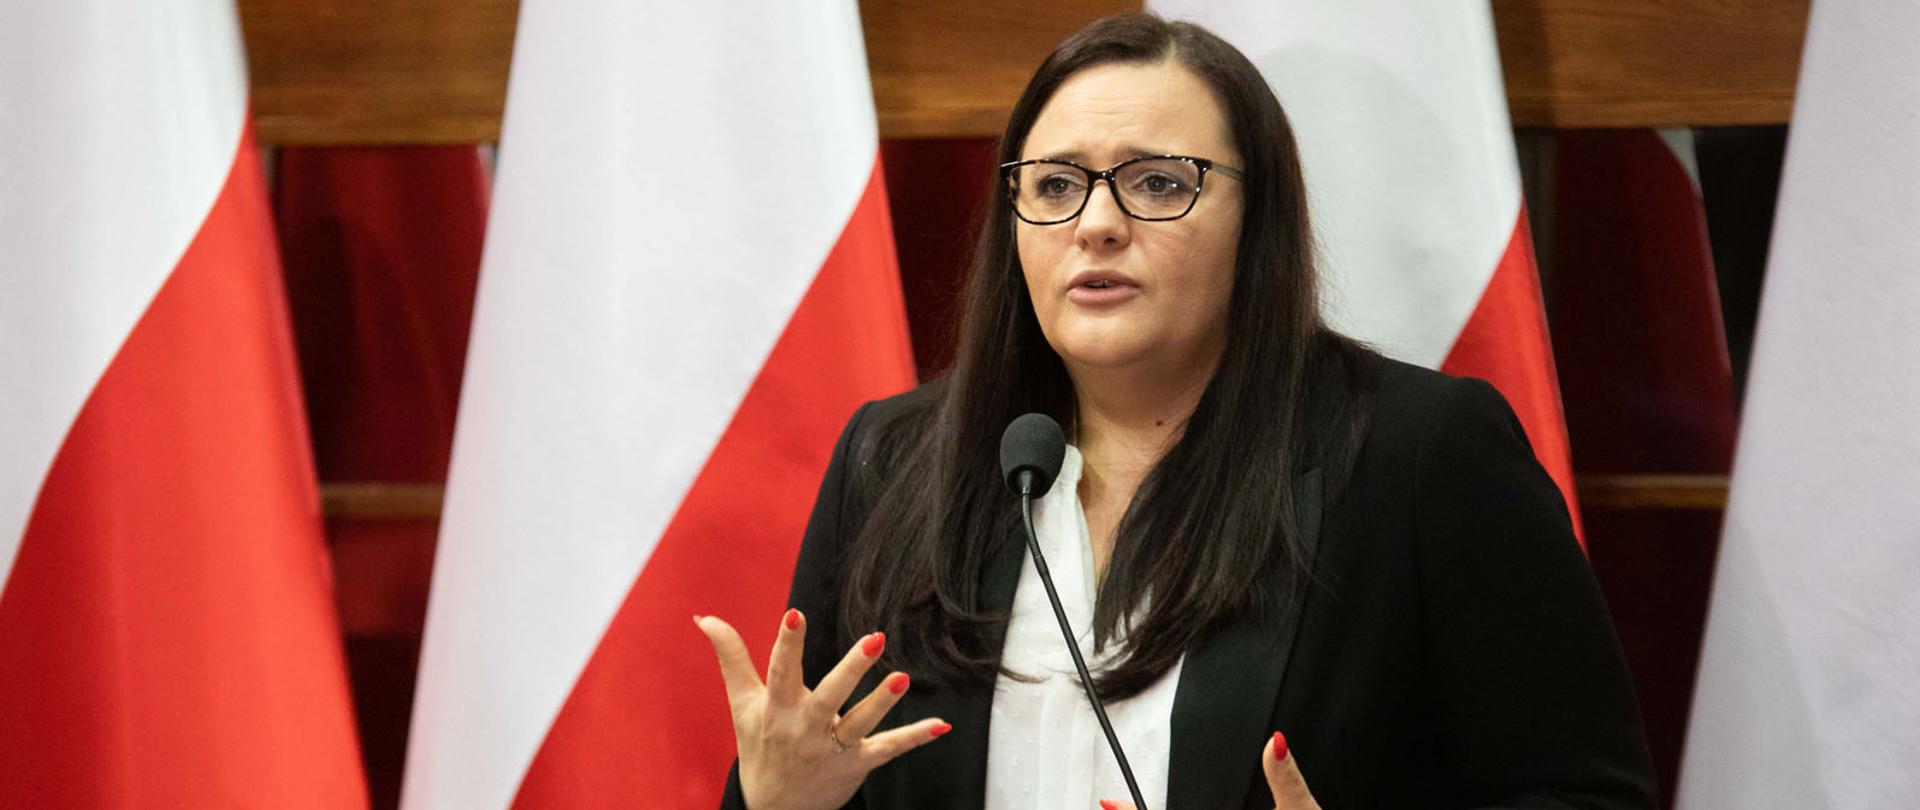 Na zdjęciu minister Małgorzata Jarosińska-Jedynak stoi przy mównicy, w tle cztery flagi biało-czerwone.